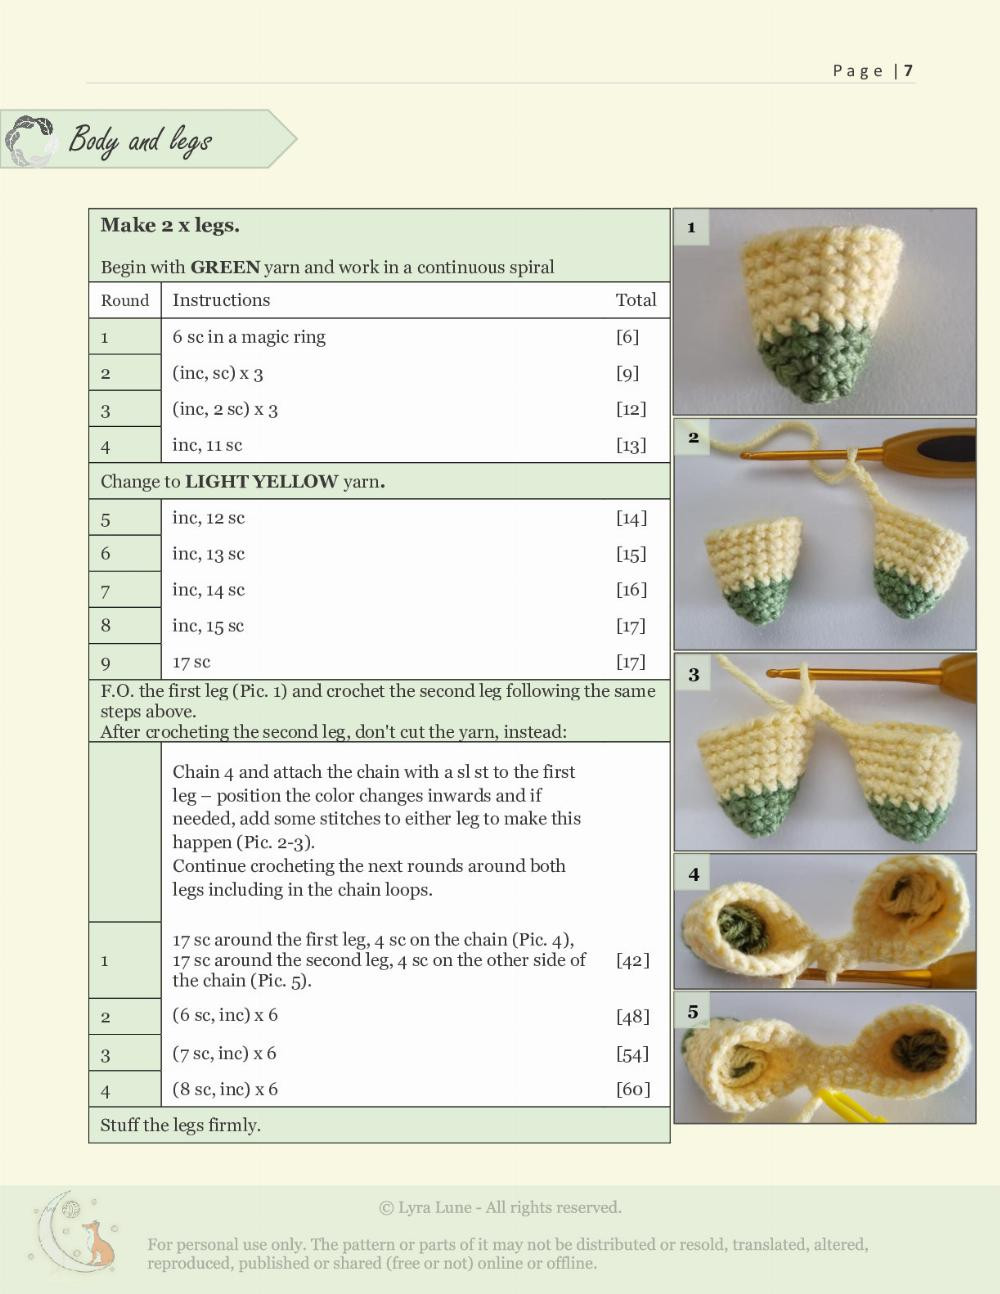 anise crochet pattern